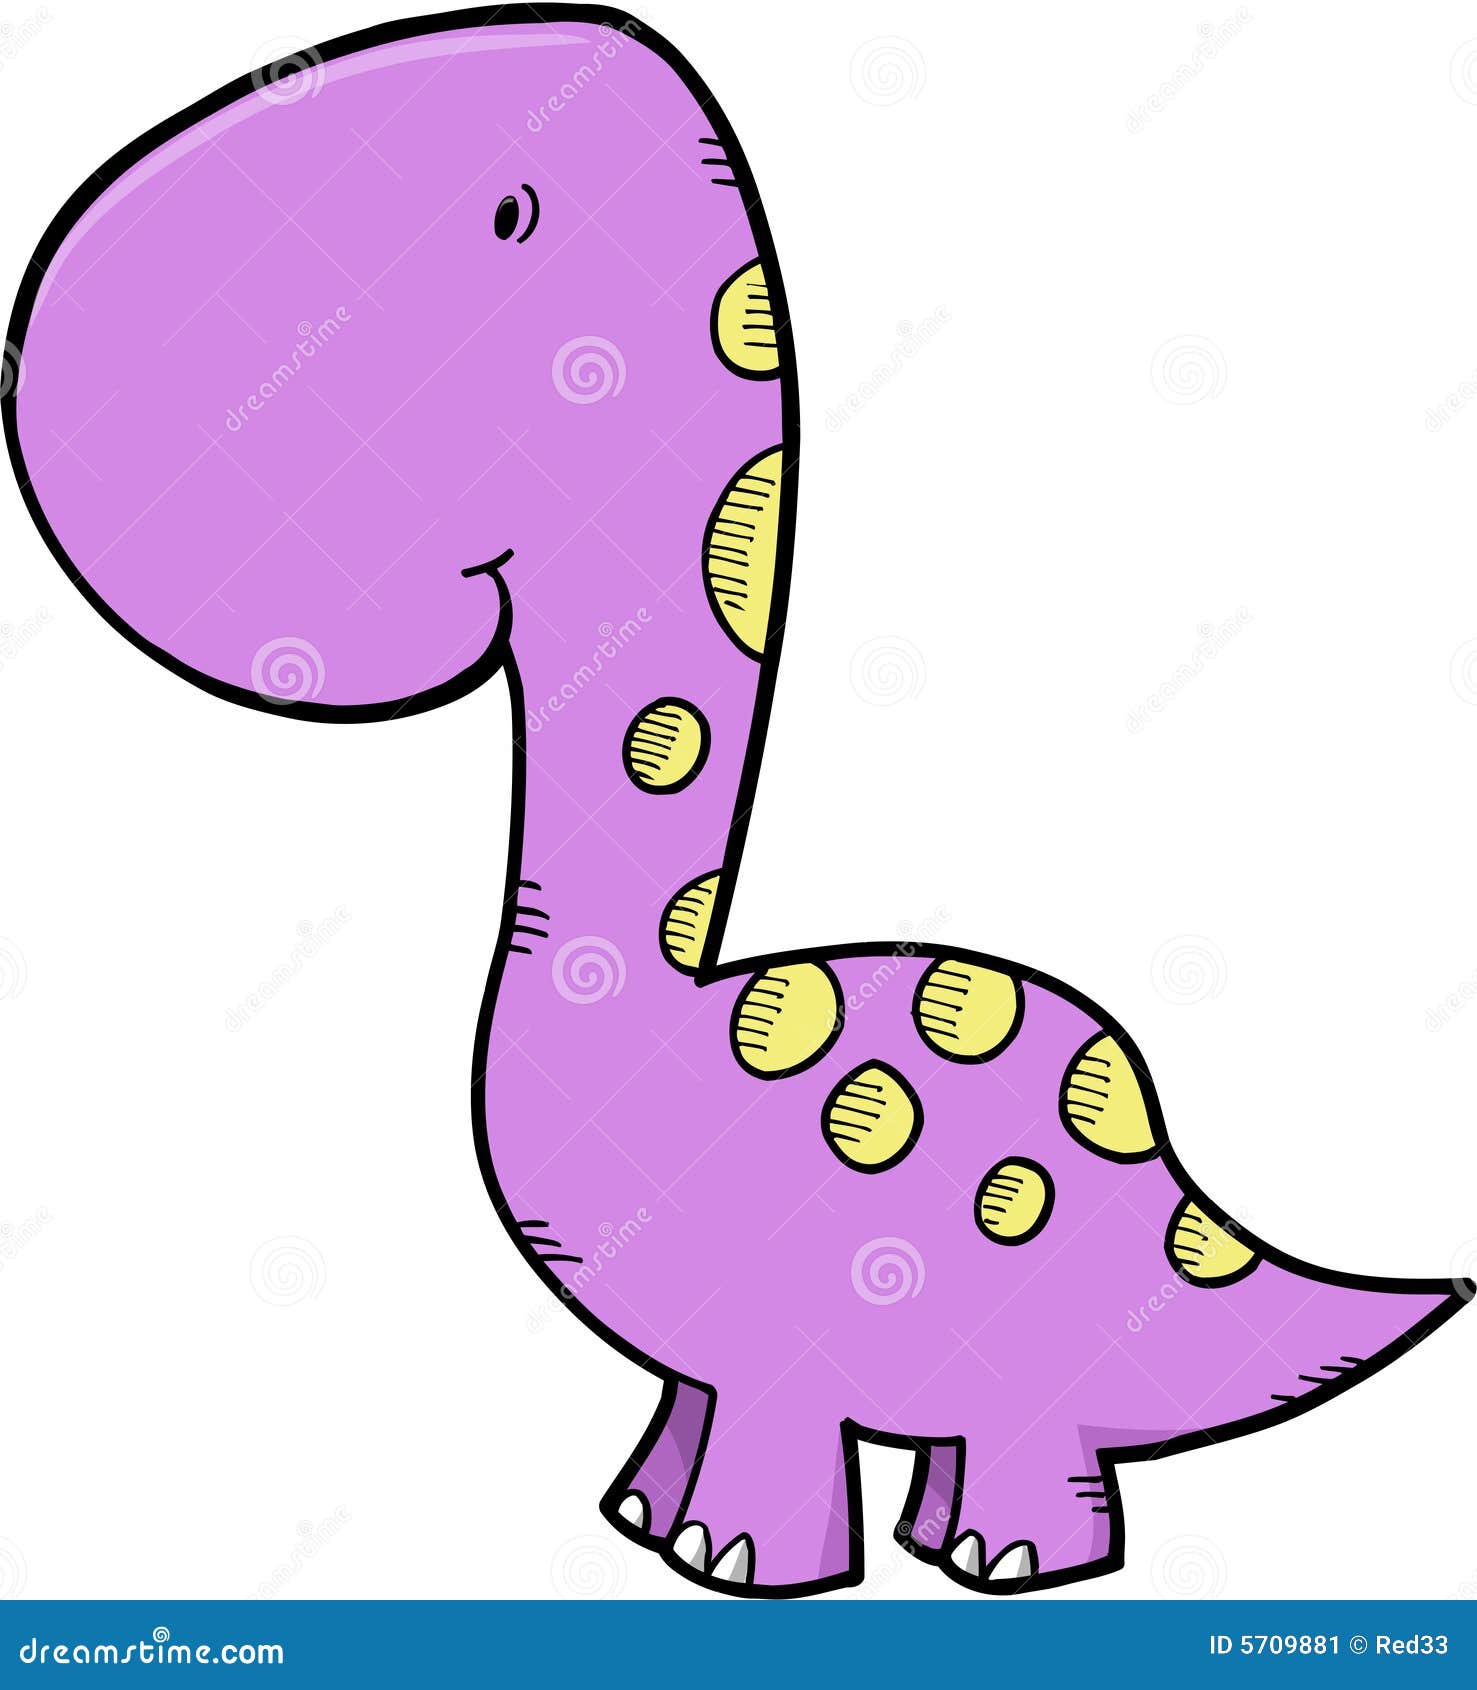 Dinossauro Roxo Com Ilustração De Cauda De Espinhos Royalty Free SVG,  Cliparts, Vetores, e Ilustrações Stock. Image 45533235